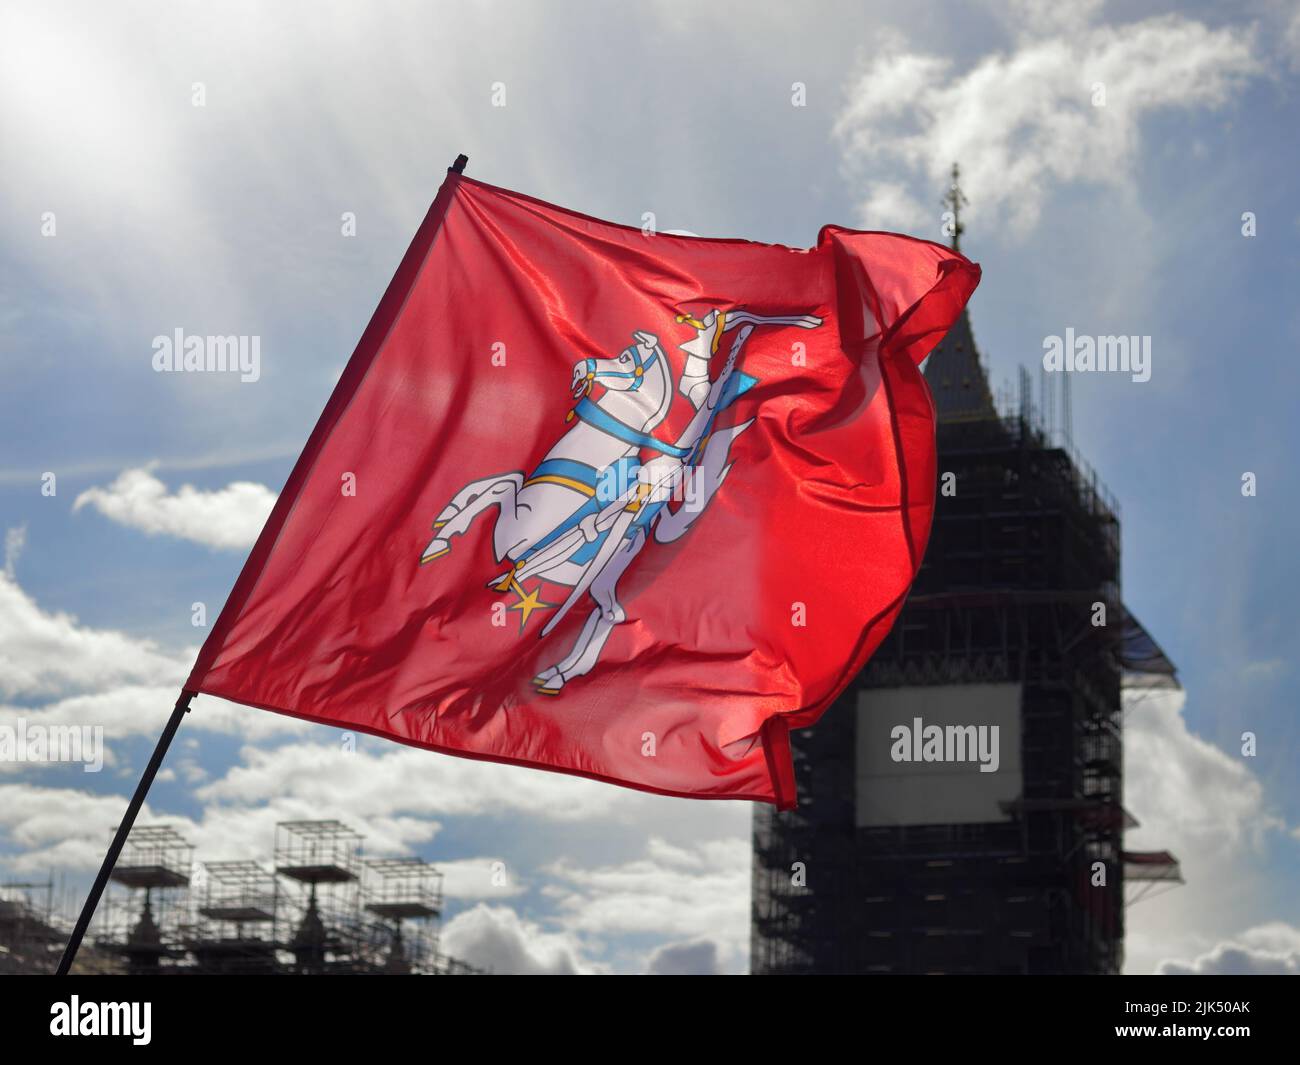 Londra, Regno Unito - 23 agosto 2020: Bandiera nazionale lituana con Big ben sullo sfondo Foto Stock